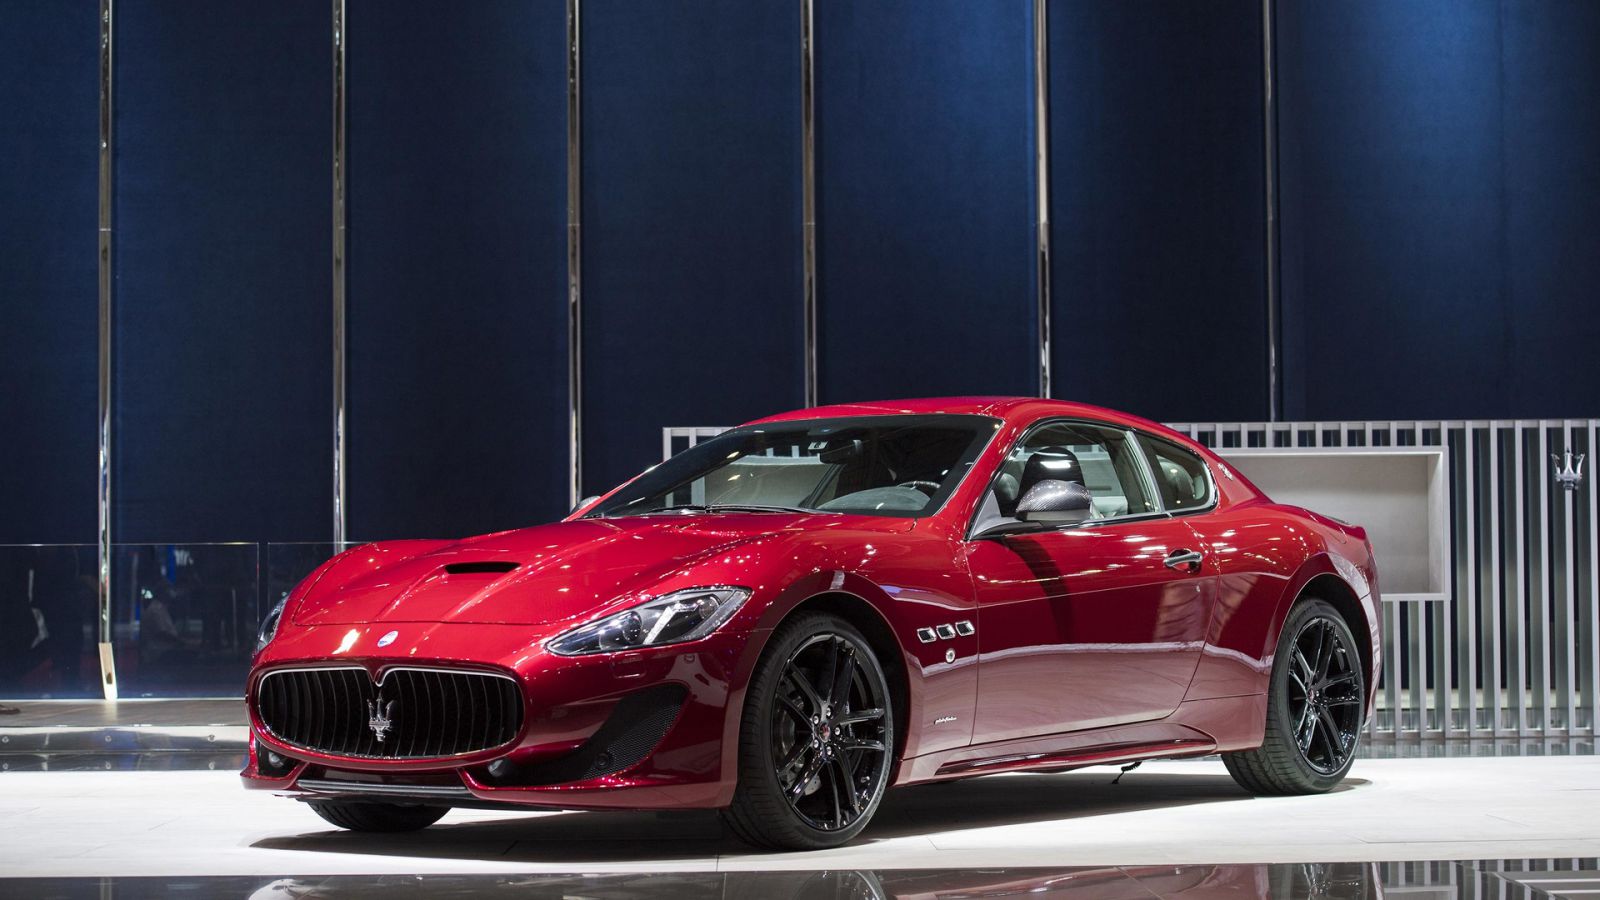 Mẫu Xe Maserati Granturismo Mui Cứng 2 Cửa Mới Nhất, Xe thể thao 4 chỗ nhập khẩu nguyên chiếc từ Ý, hiện tại đang có giá bán từ 12,7 tỷ - 14, 7 tỷ đồng,